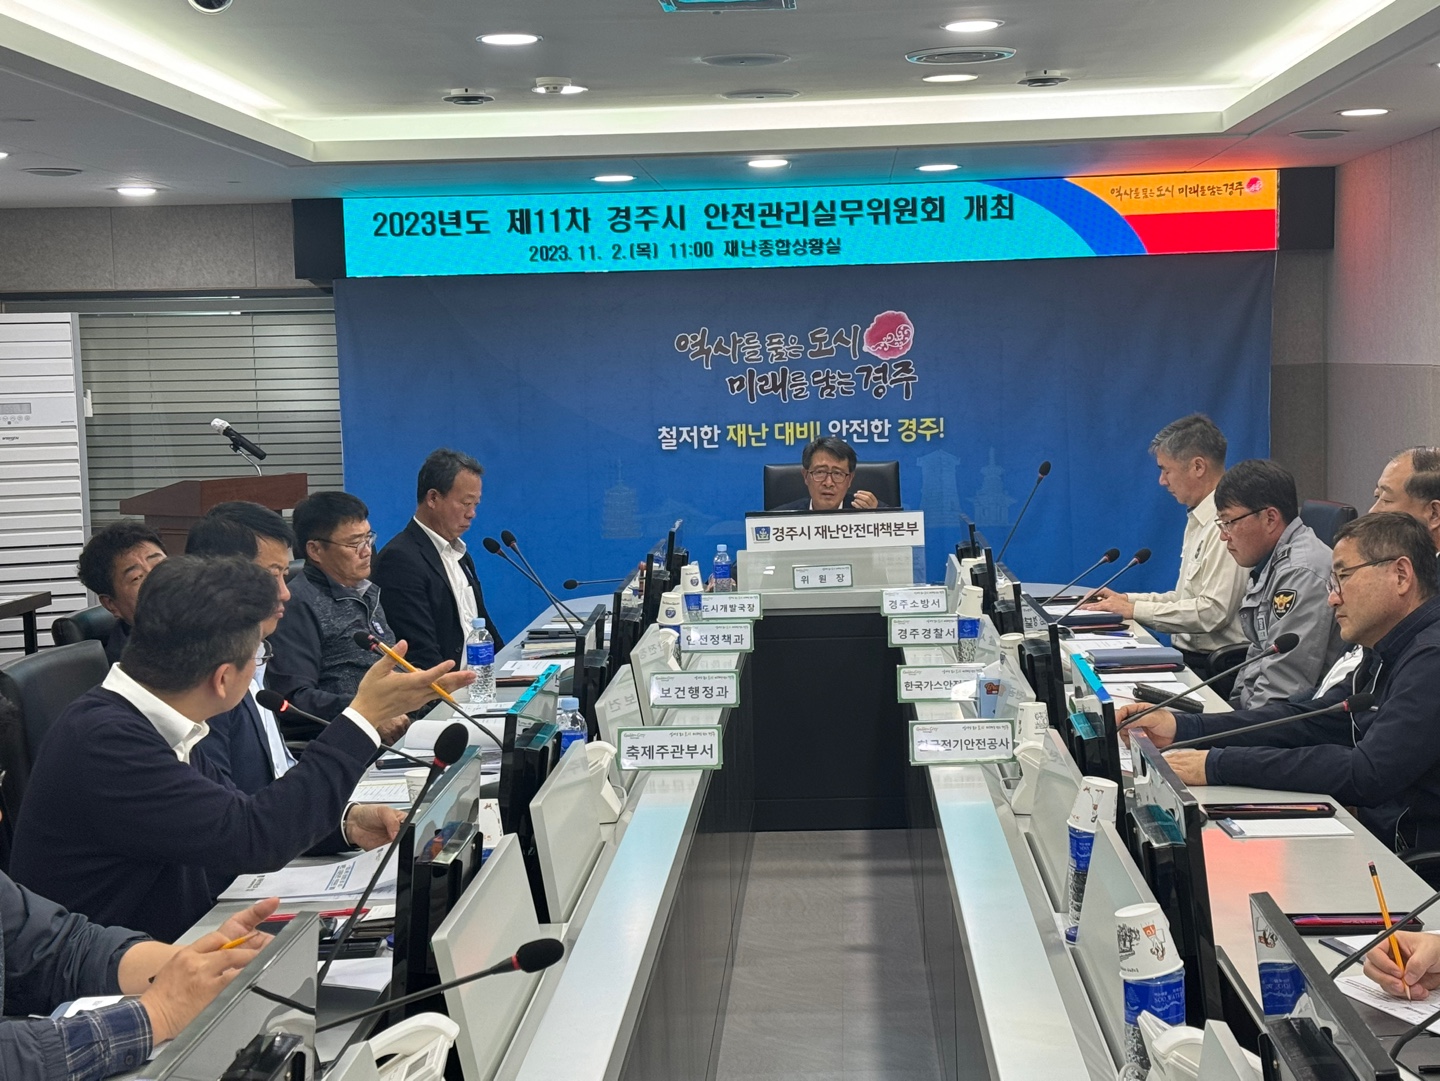 김성학 부시장을 주재로 2일 시청 재난안전종합상황실에서 ‘2025 APEC 정상회의 경주유치 희망 슈퍼콘서트’의 안전관리 실무위원회가 진행되고 있다.